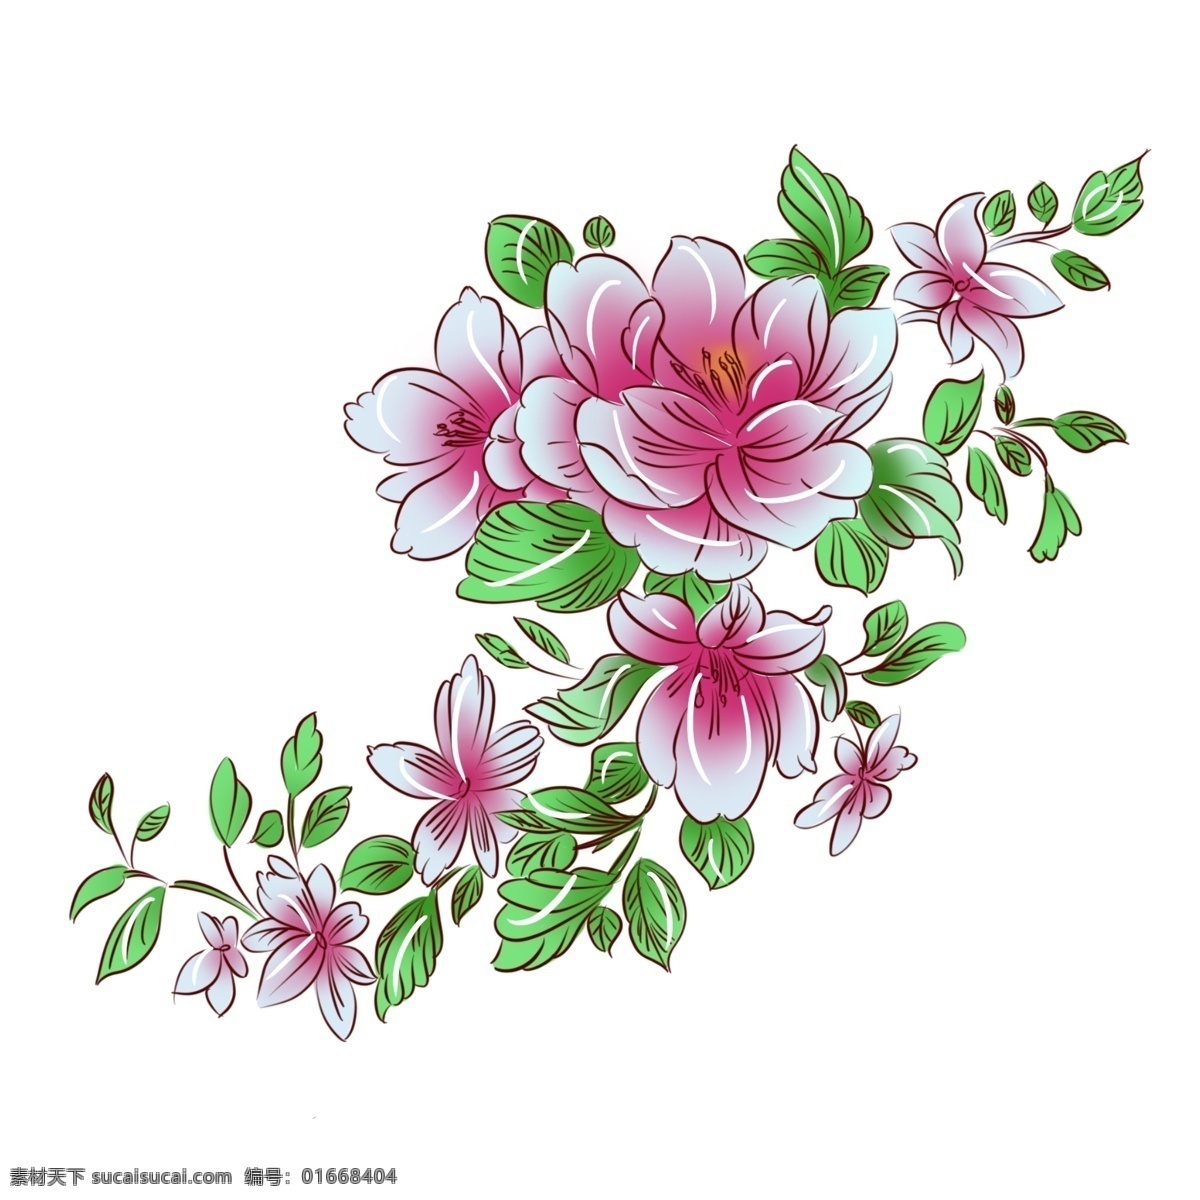 手绘 植物 粉红色 牡丹花 手绘花 手绘植物 手绘牡丹 粉红牡丹